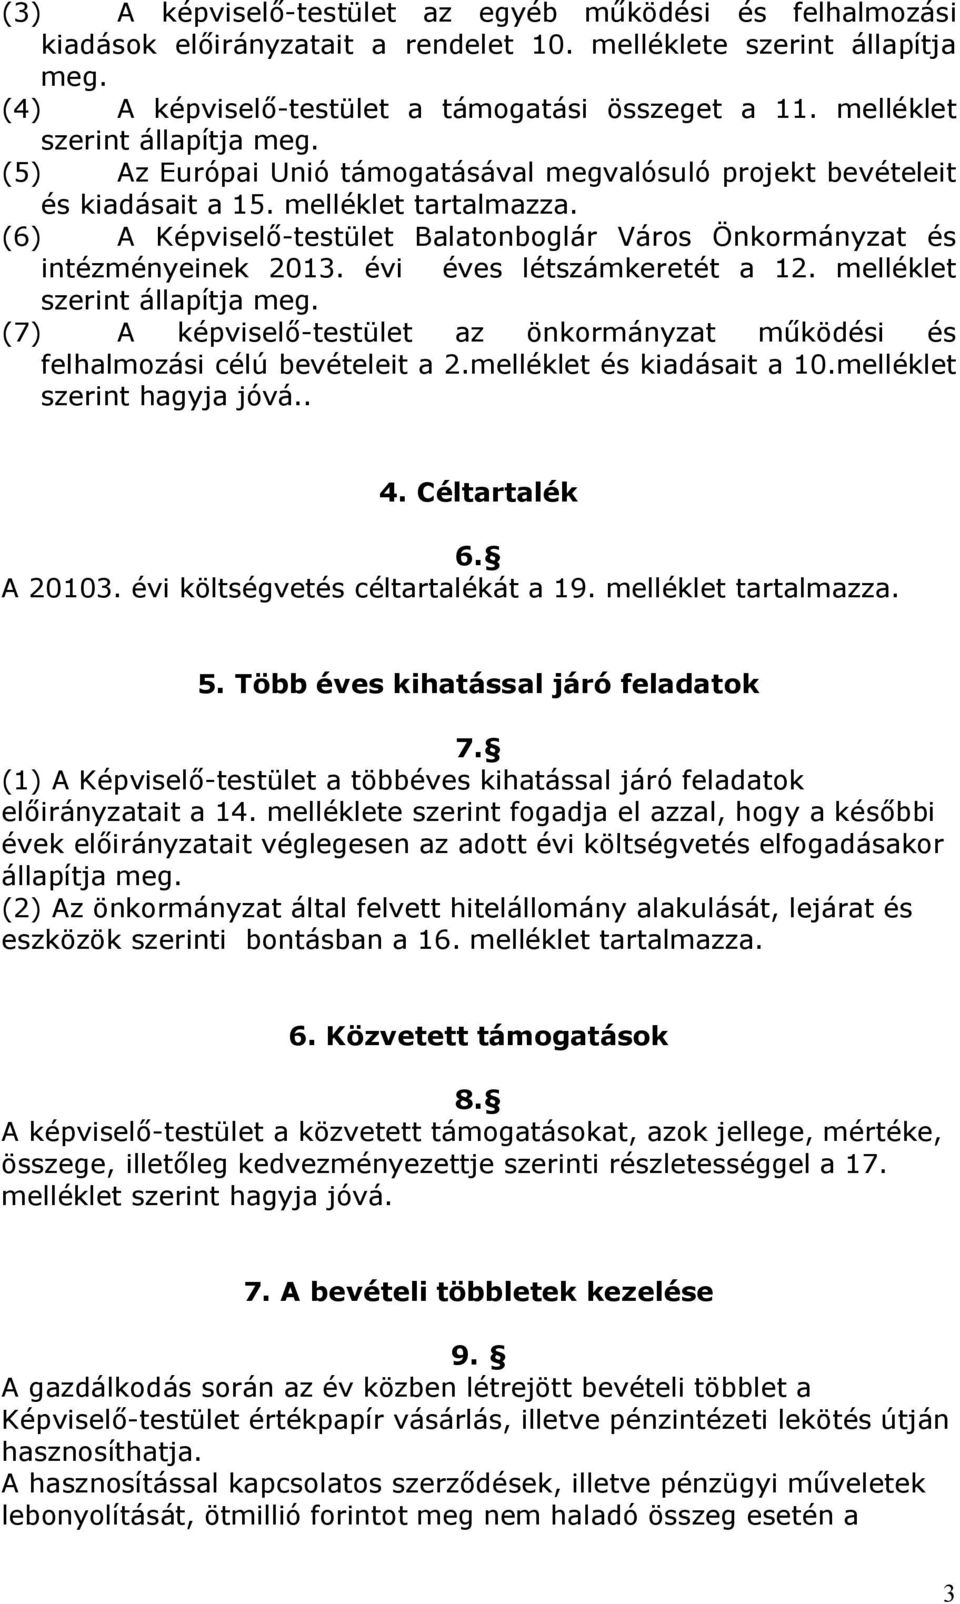 (6) A Képviselő-testület Balatonboglár Város Önkormányzat és intézményeinek 2013. évi éves létszámkeretét a 12. melléklet szerint állapítja meg.